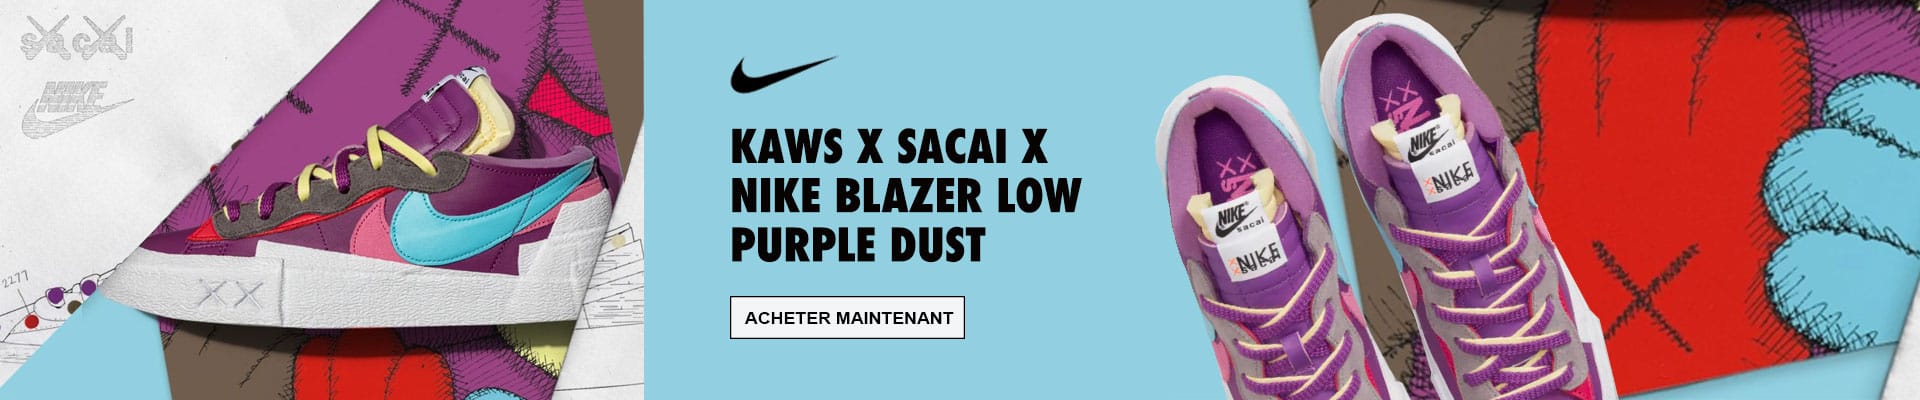 Nike Blazer Low Kaws